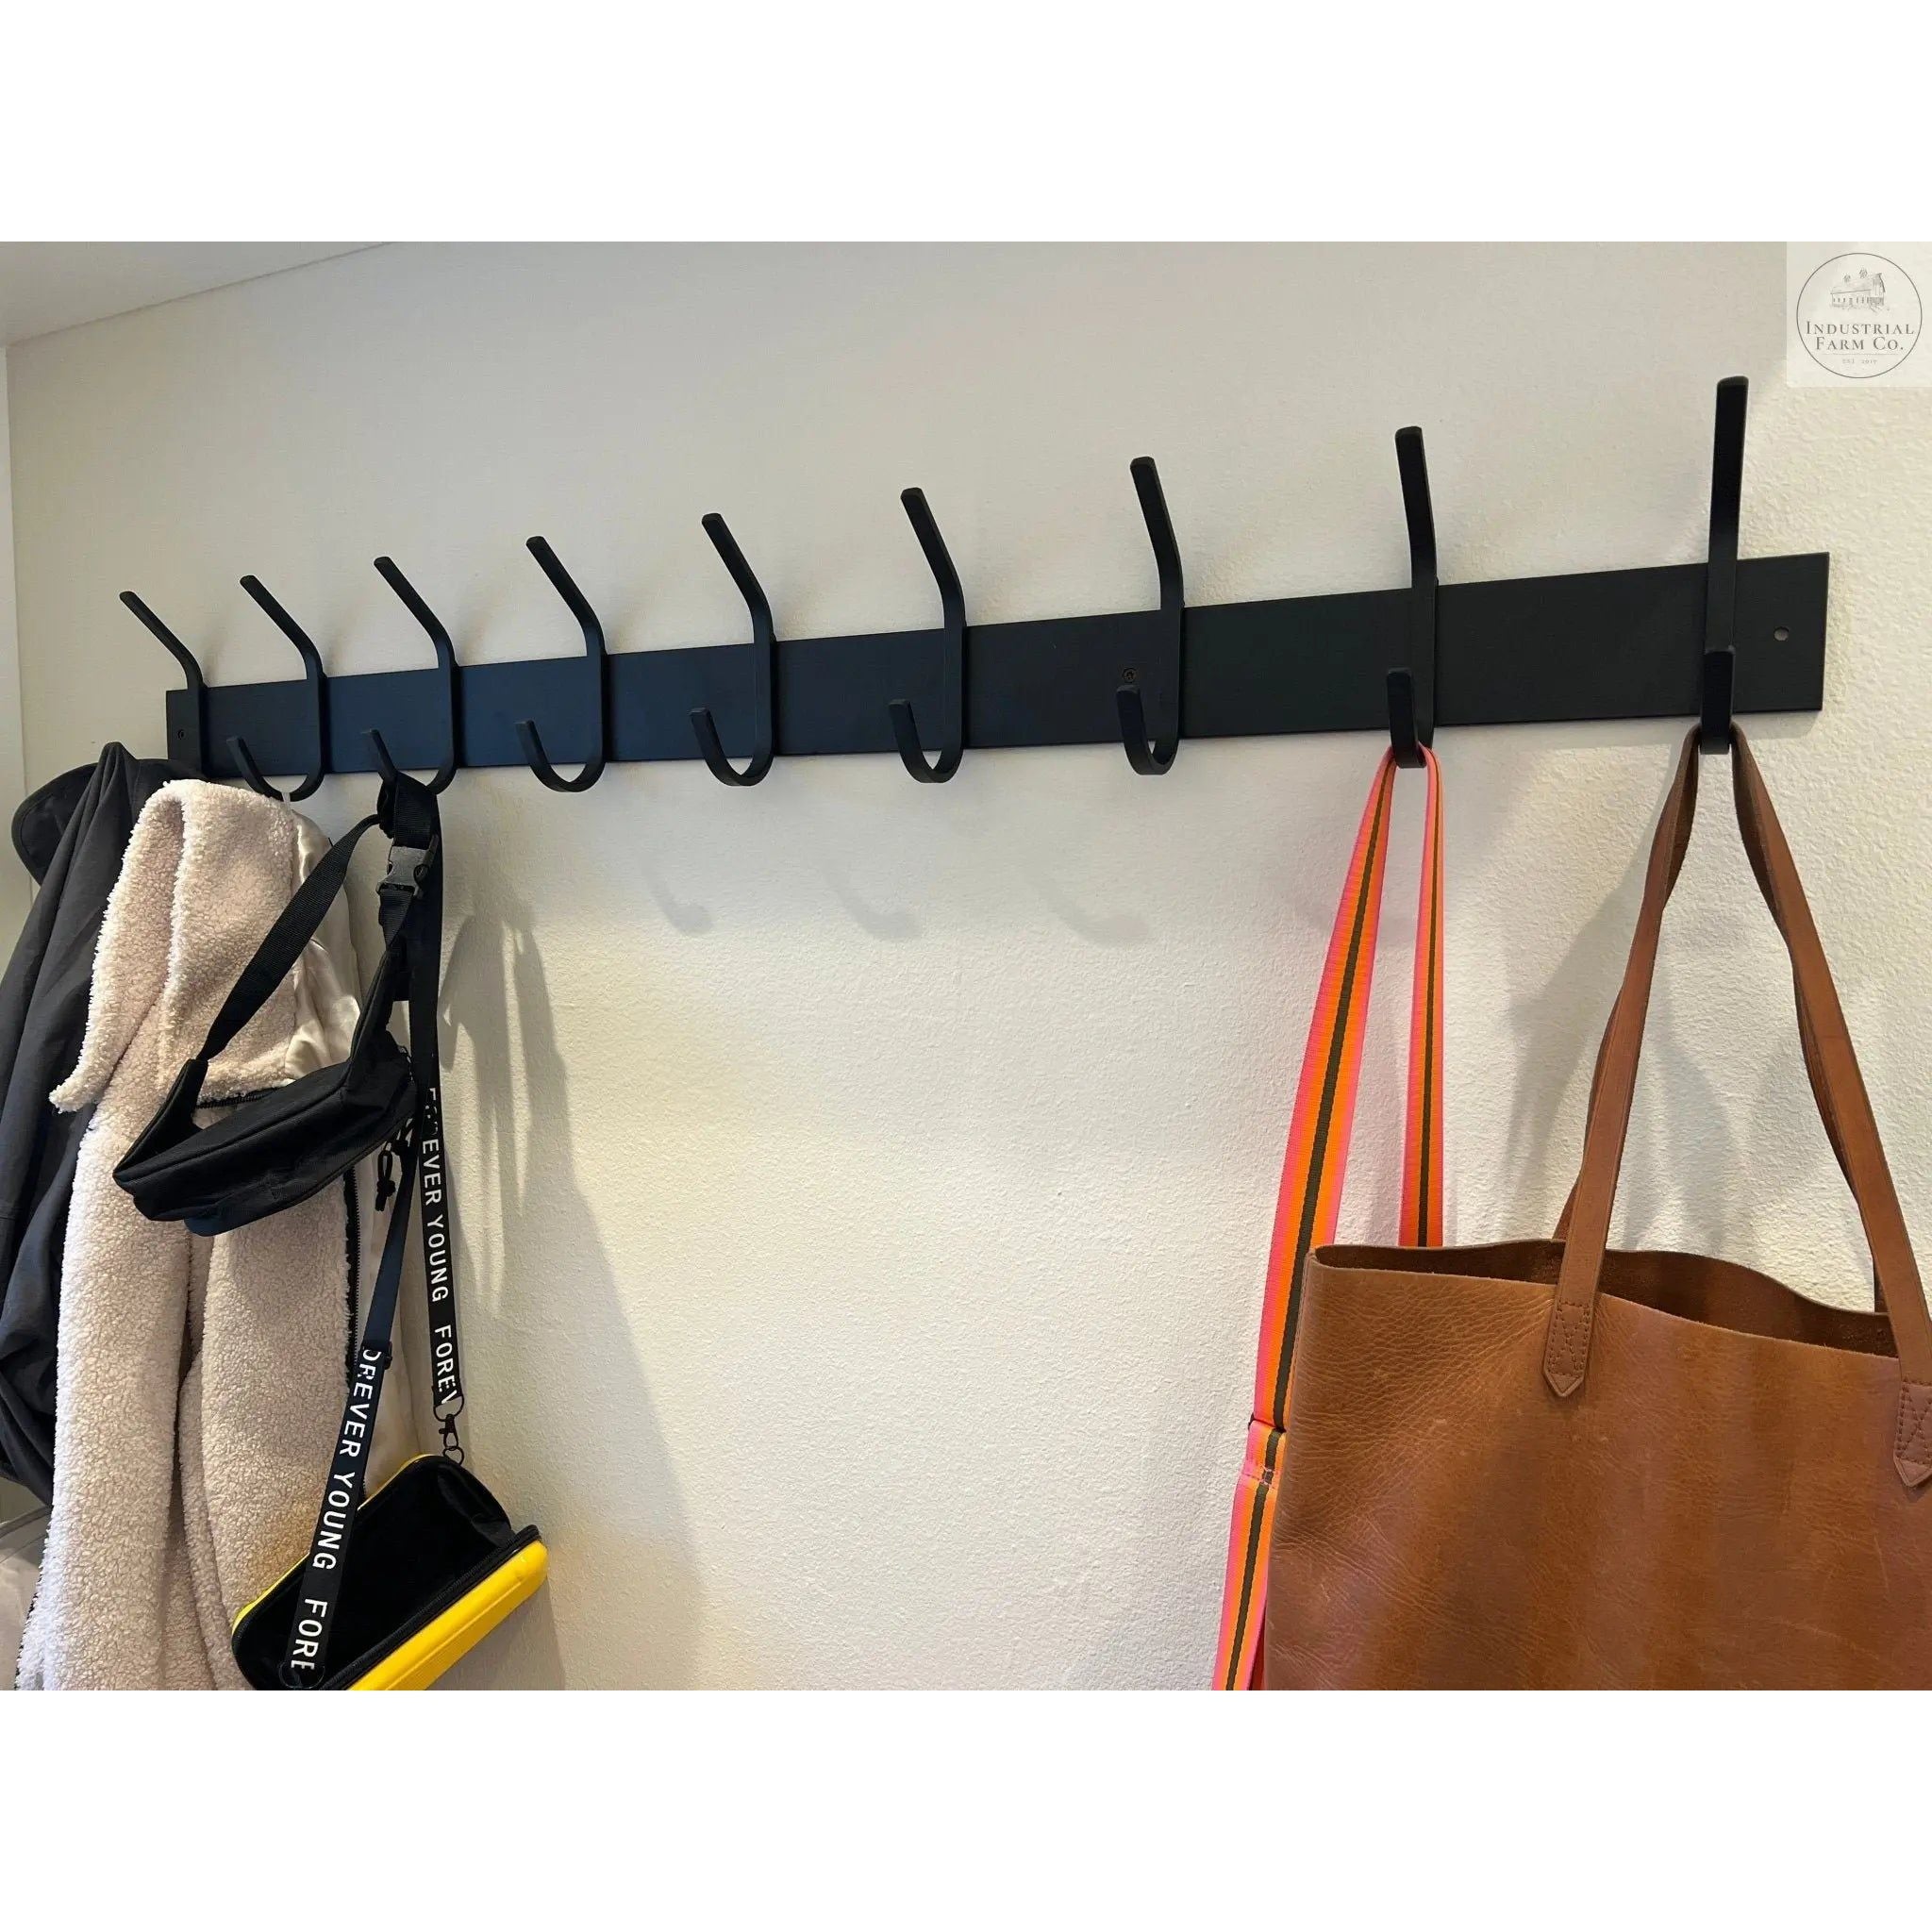 Rustic Shelf with Industrial Hanger - Pot Rack - Coat Hanger